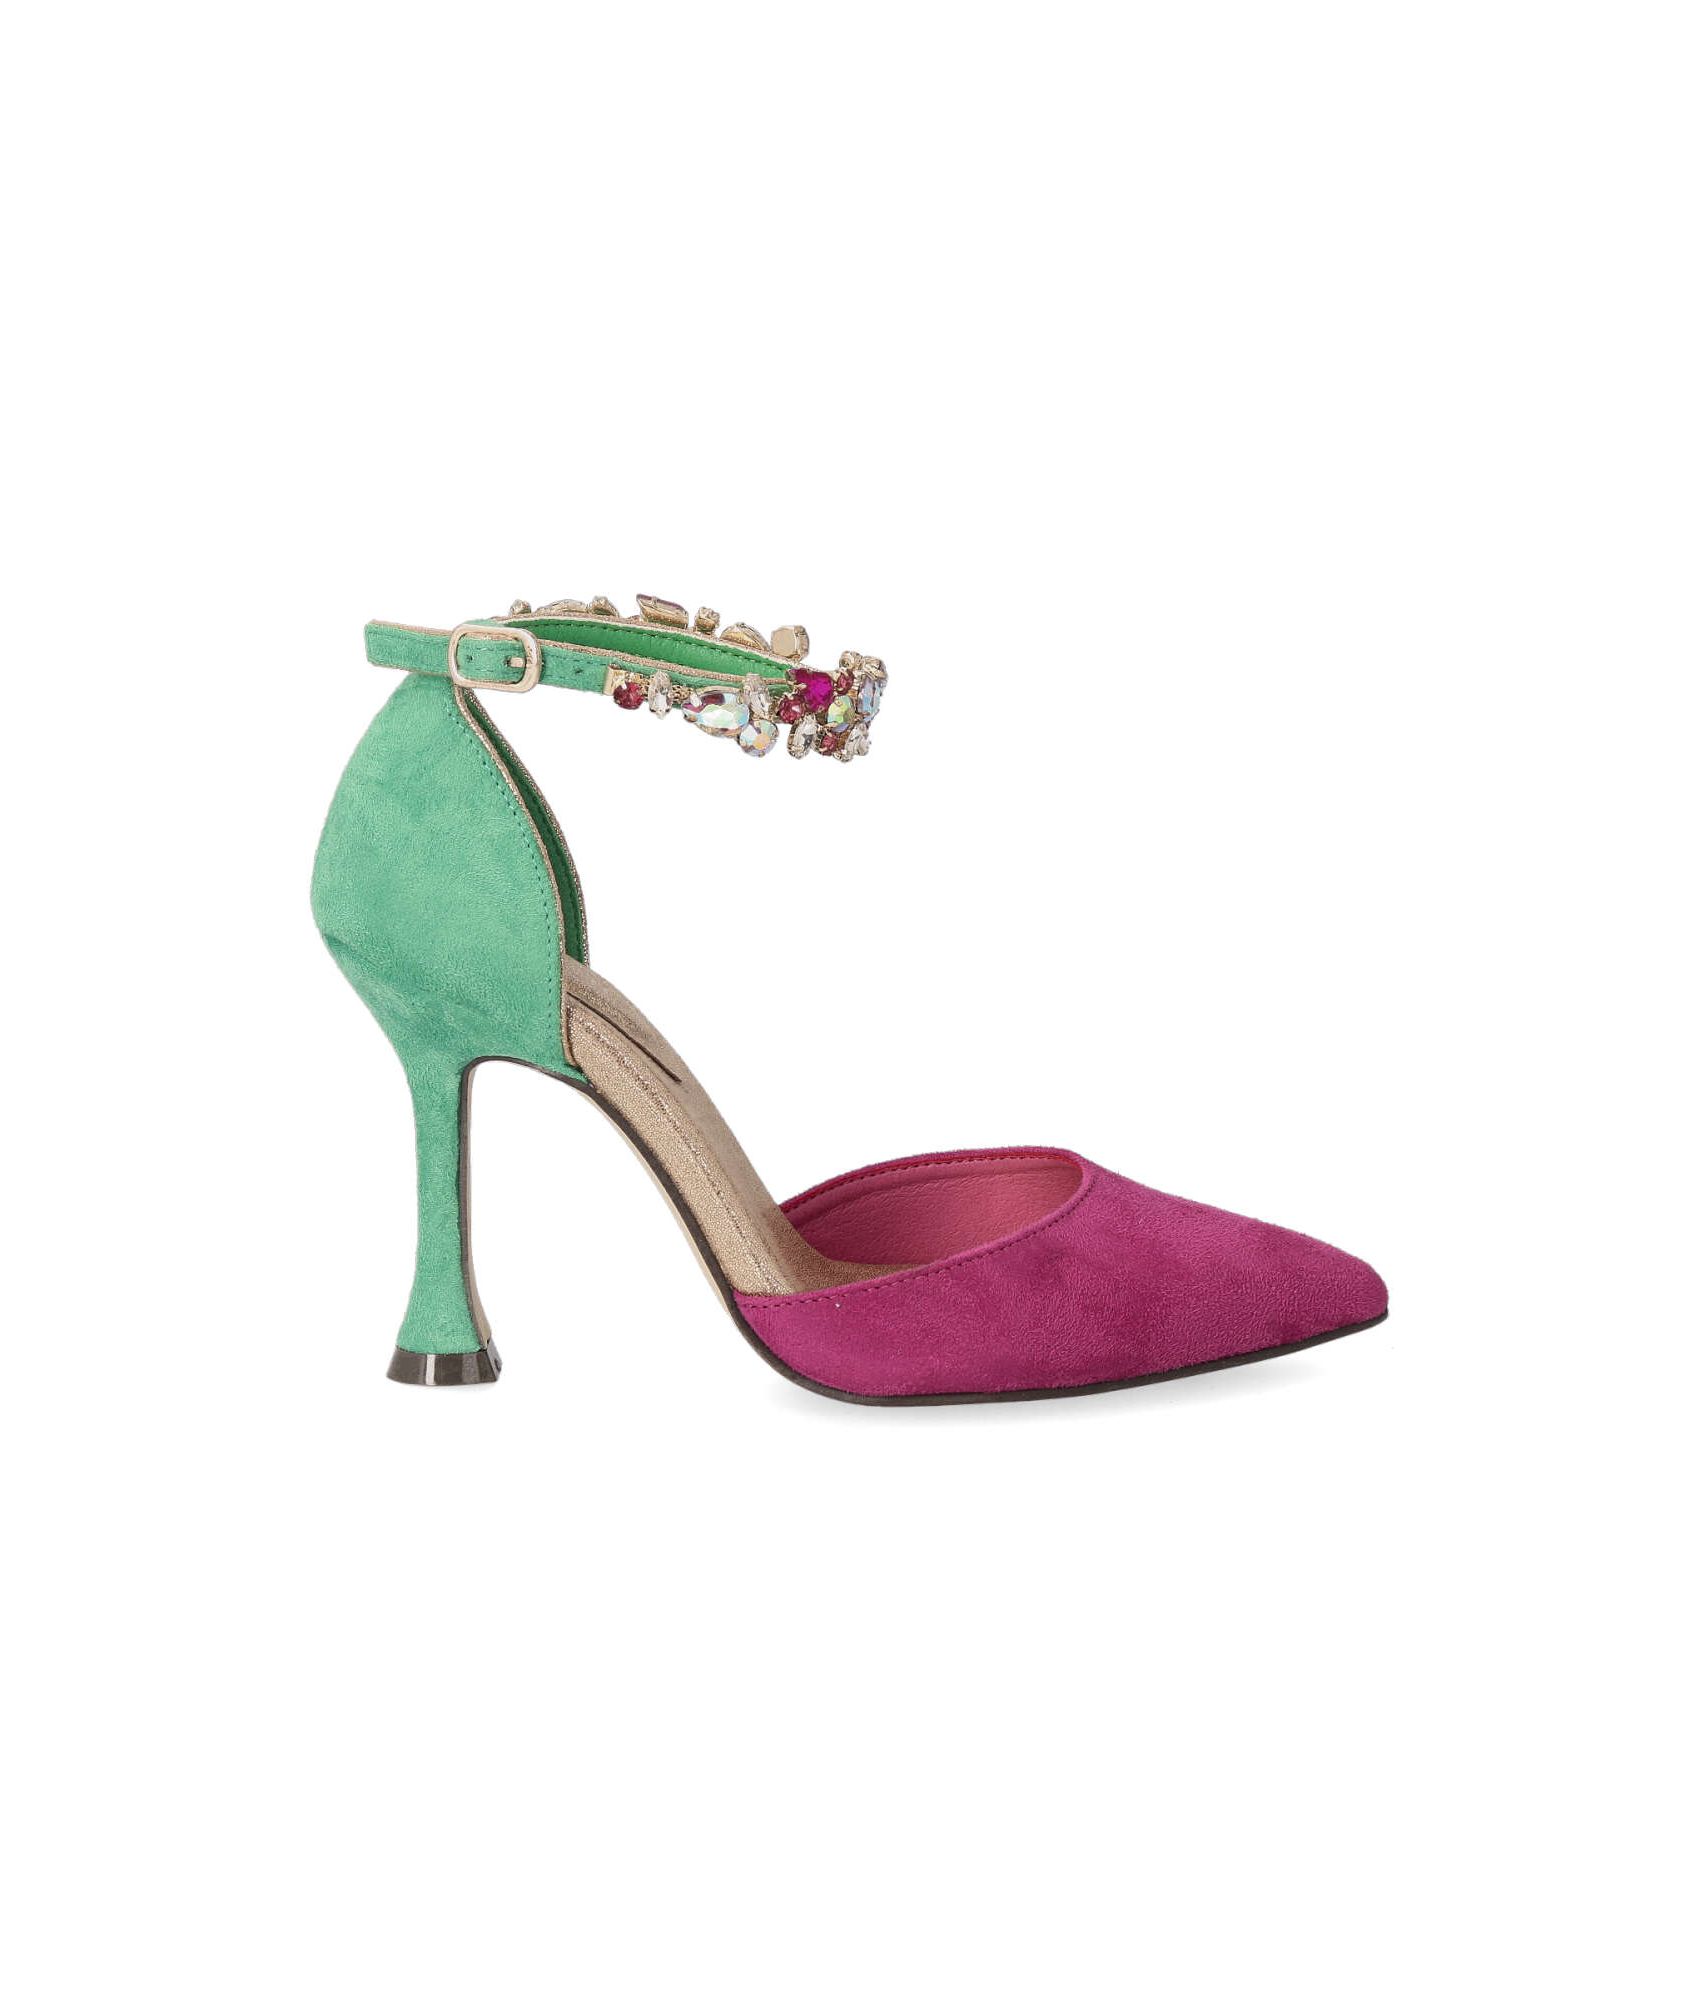 Zapatos de fiesta mujer color buganvilla detalle pulsera y hebilla